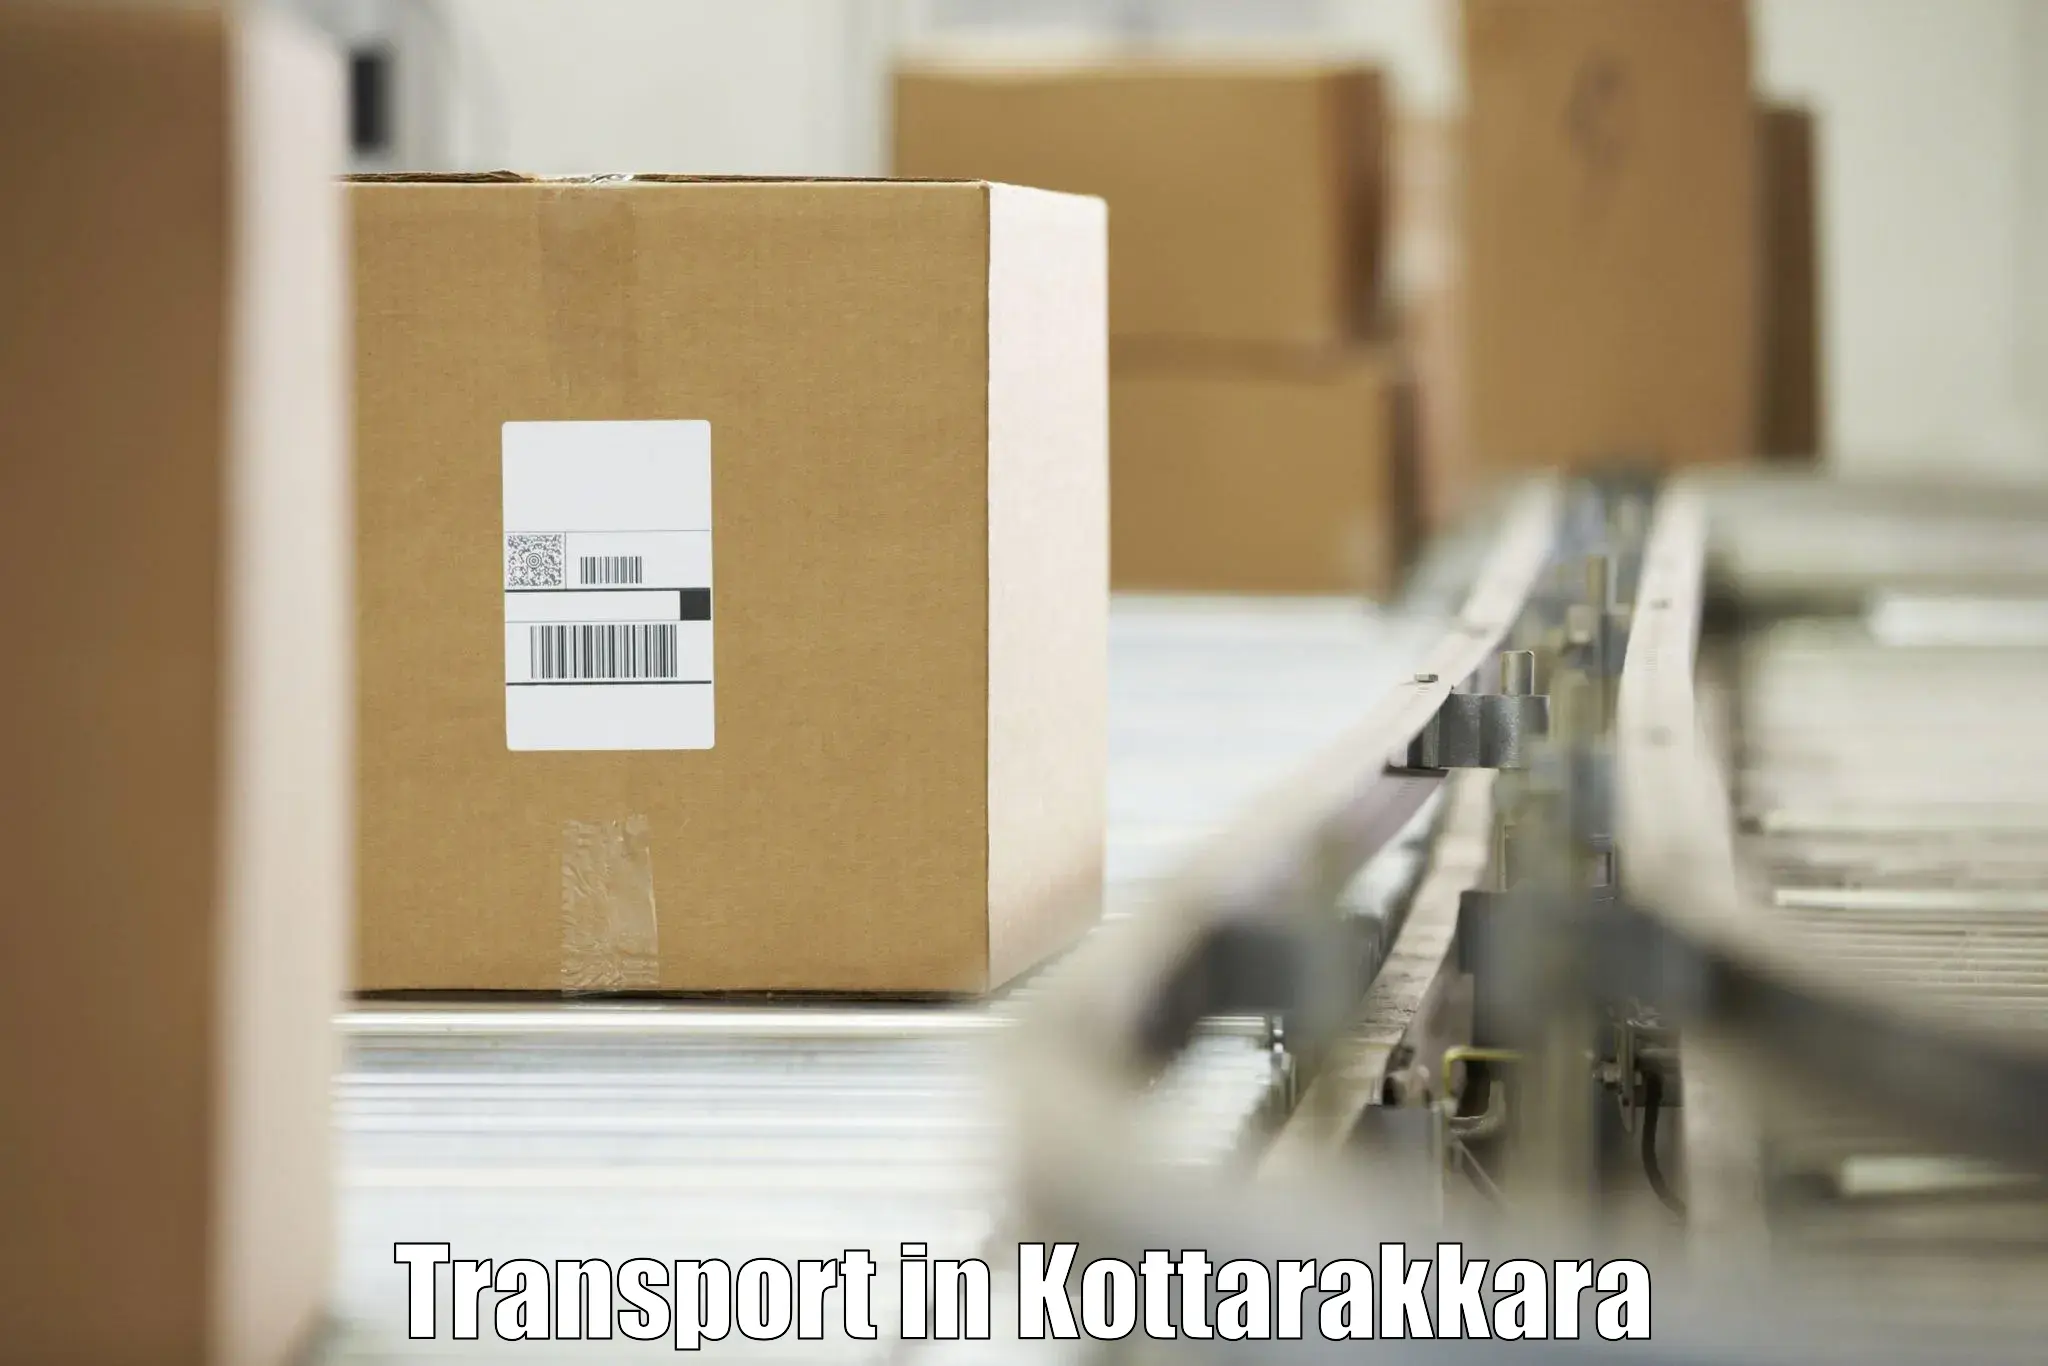 Transport shared services in Kottarakkara